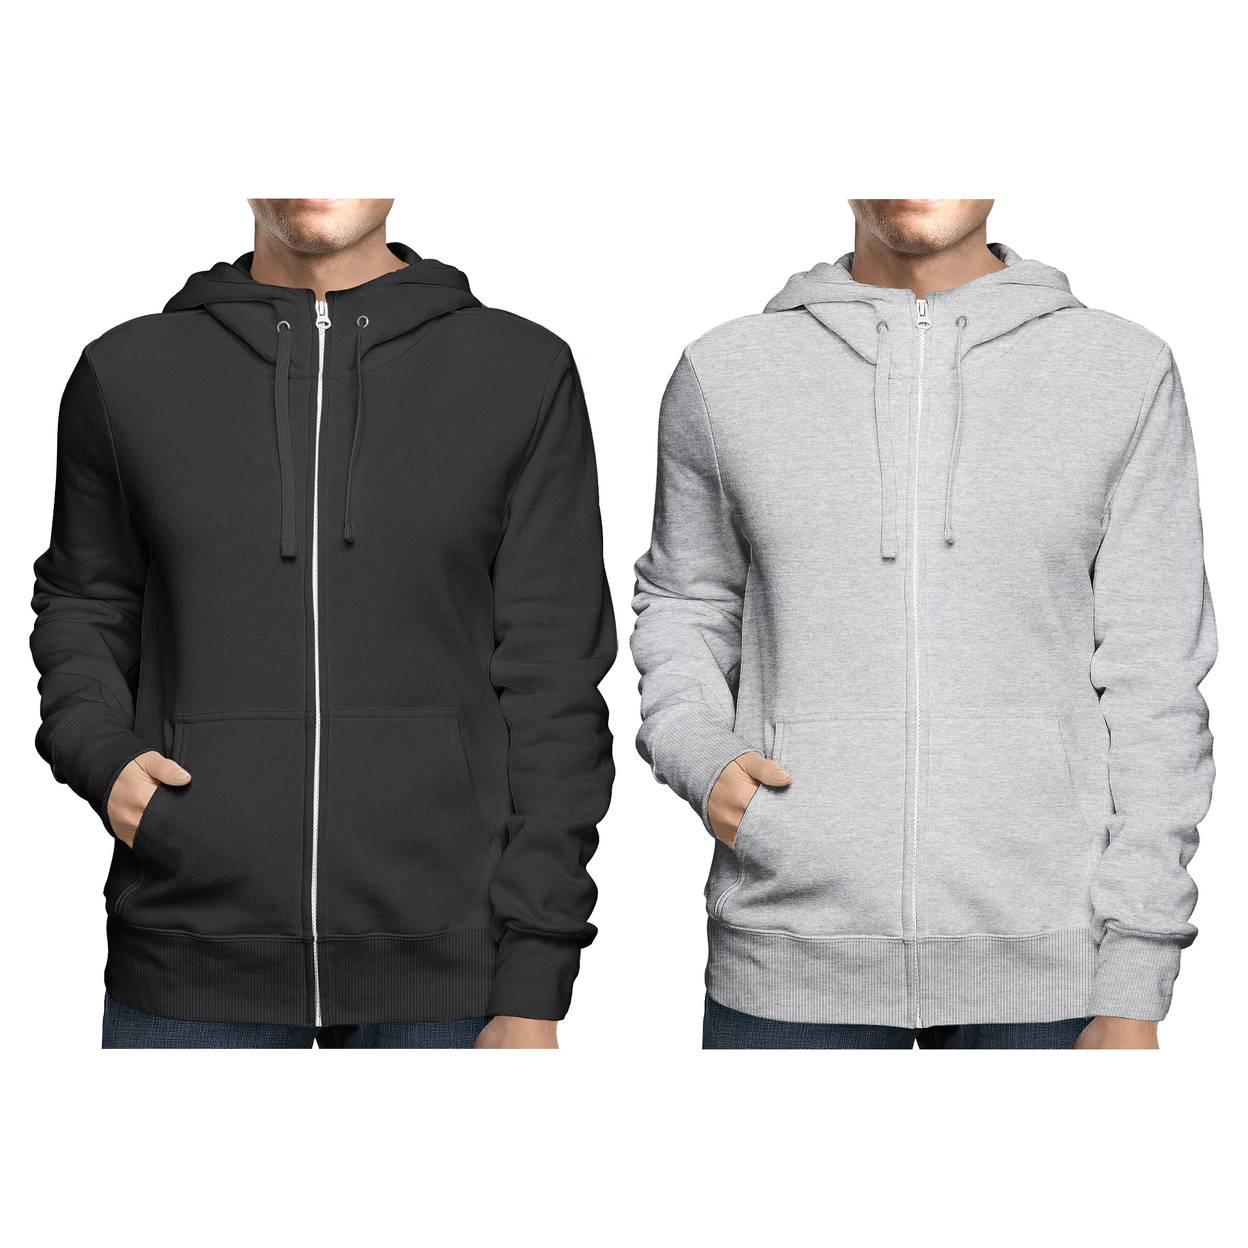 2-Pack: Men's Winter Warm Soft Full Zip-Up Fleece Lined Hoodie Sweatshirt - Black & Navy, Medium